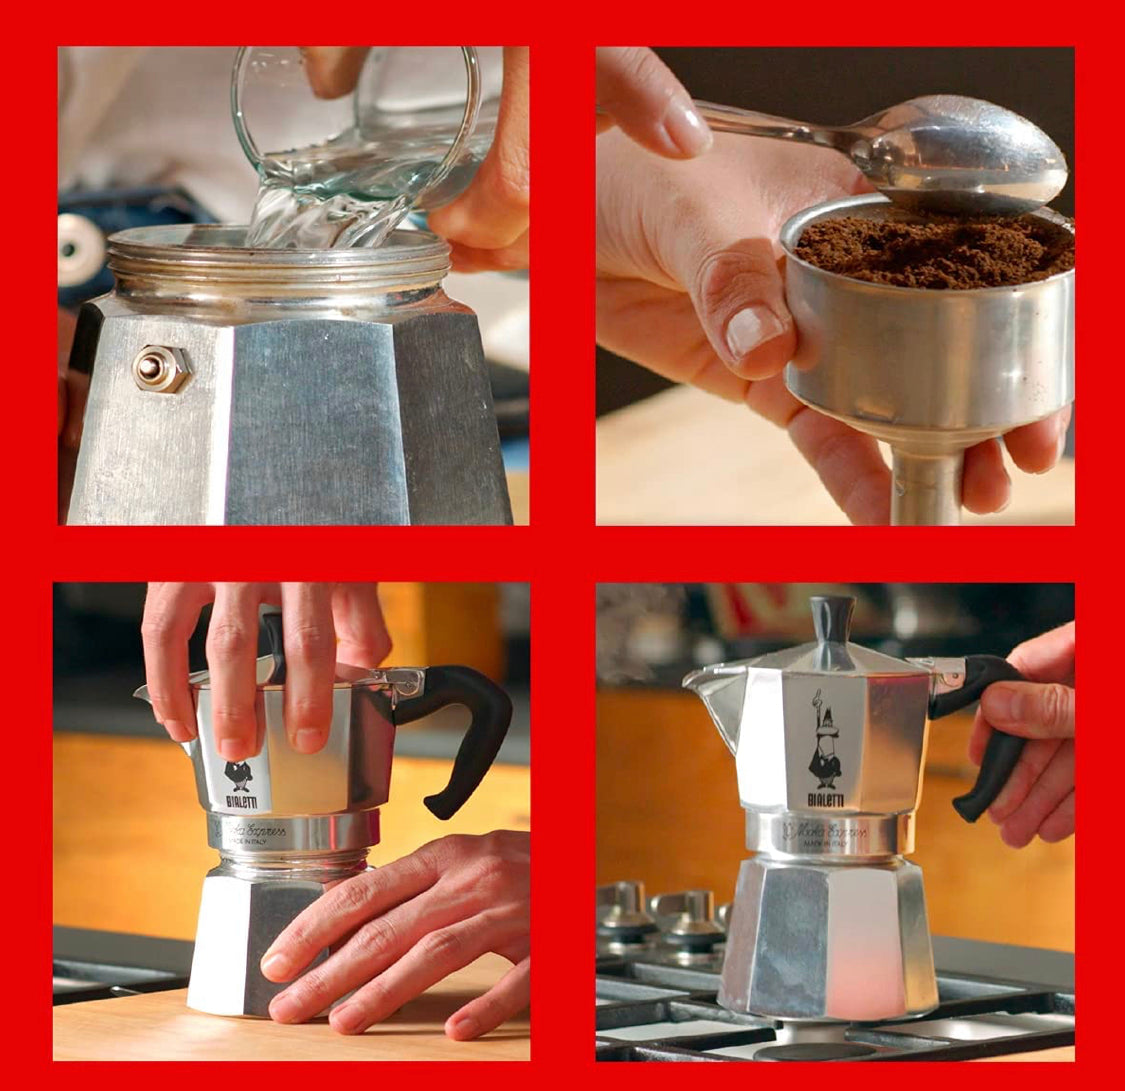 Bialetti - Moka Espresso Maker, 3 Cups (4.3 Oz - 130 Ml) Aluminium, Si –  Delizioso Gourmet